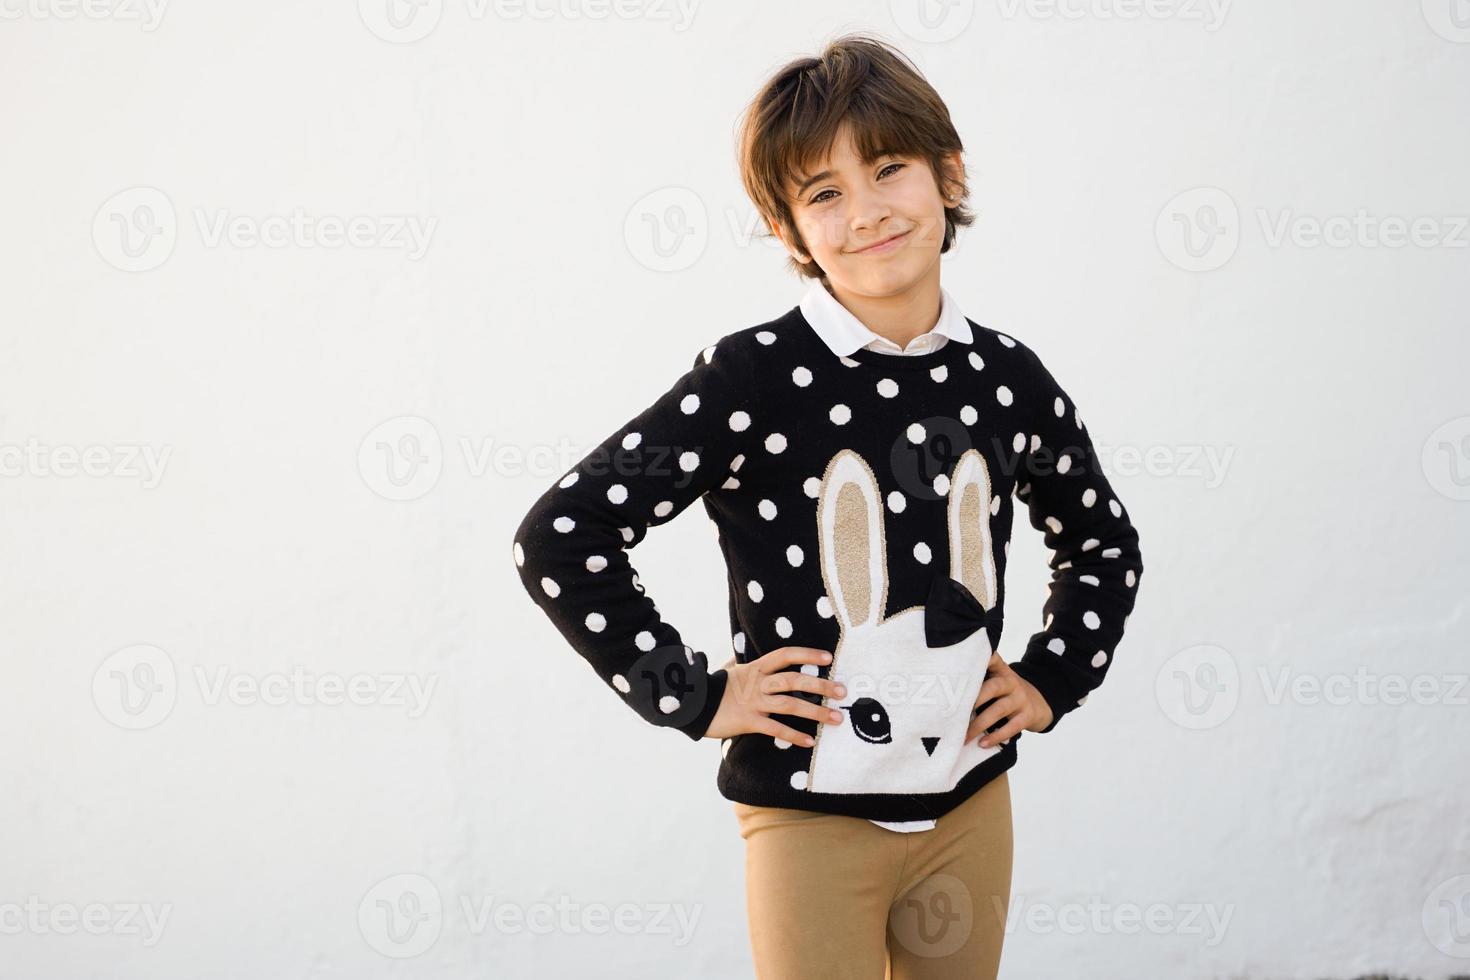 sju år gammal flicka med kort hår som ler på en vit vägg foto